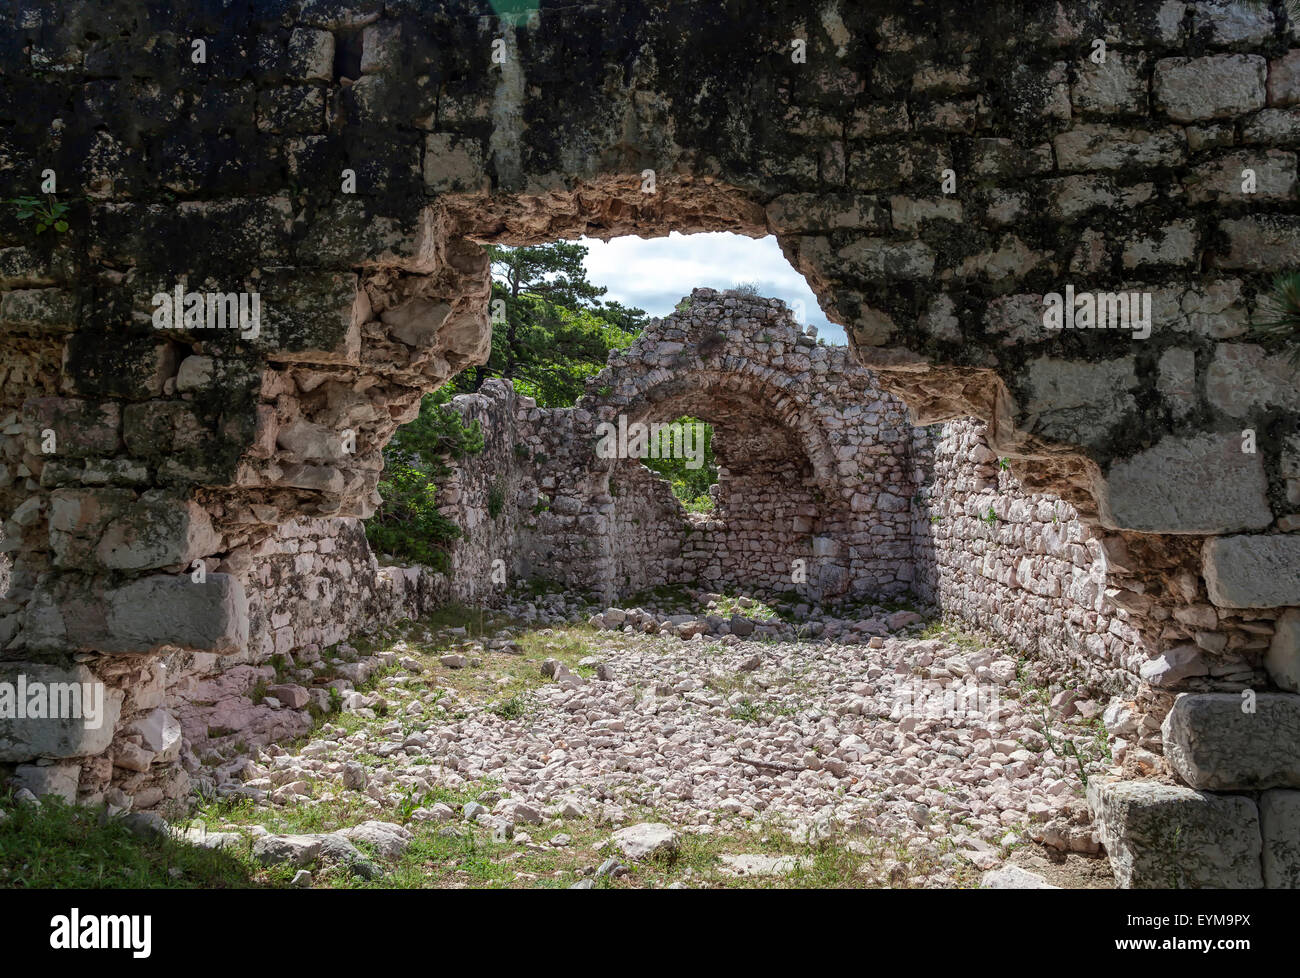 Ruine eines Hauses auf der Insel Krk, Kroatien Stock Photo